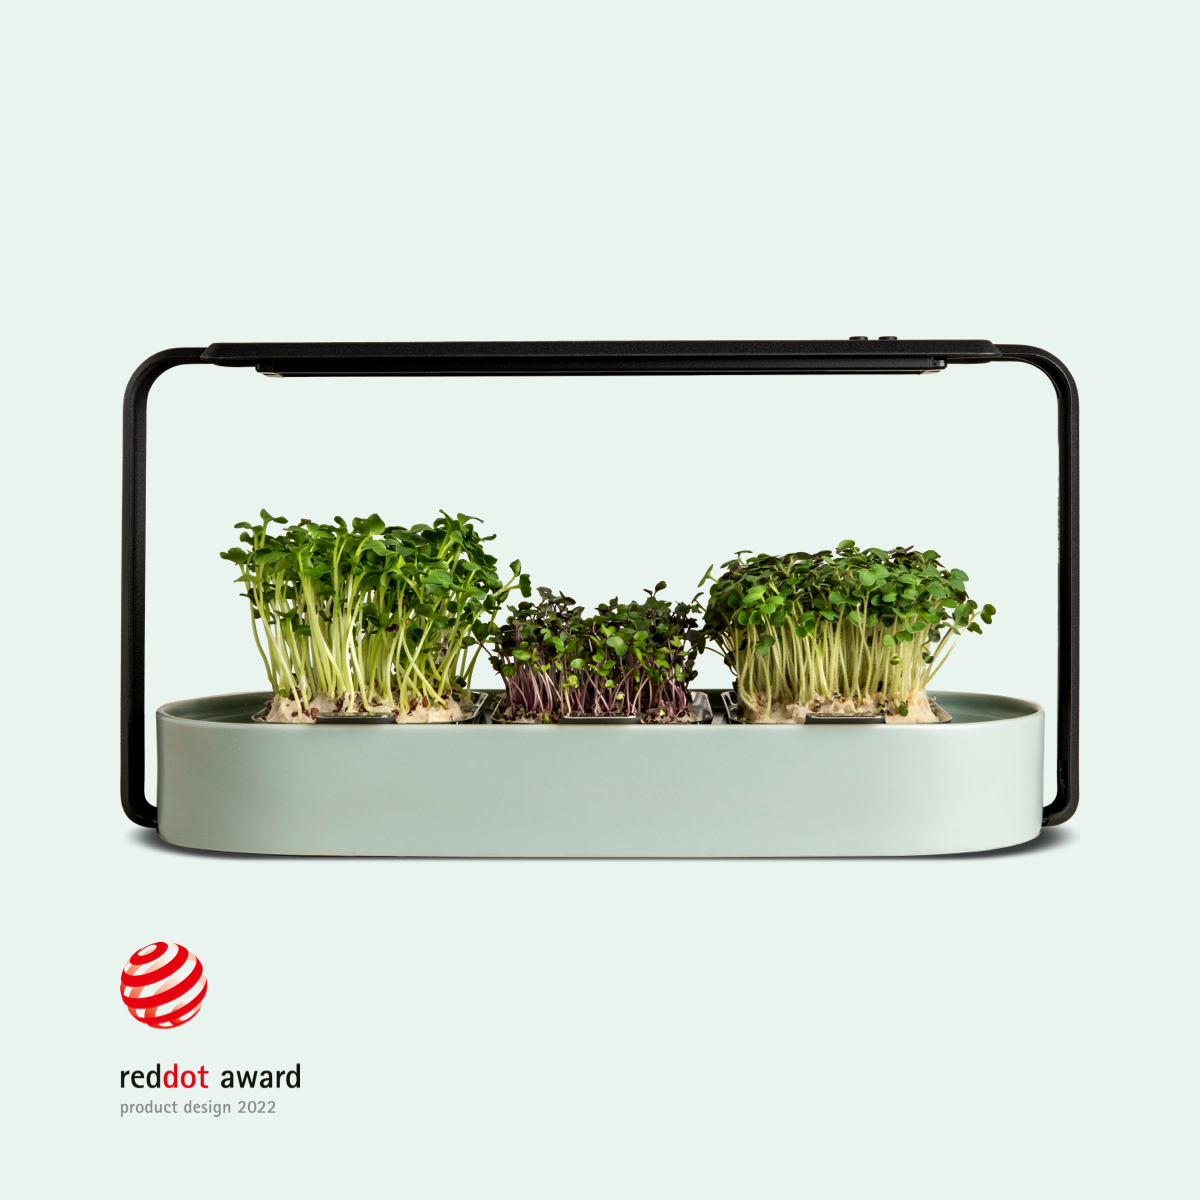 ingarden (bundle offer) Microgreens Growing Kit ingarden warm mint  